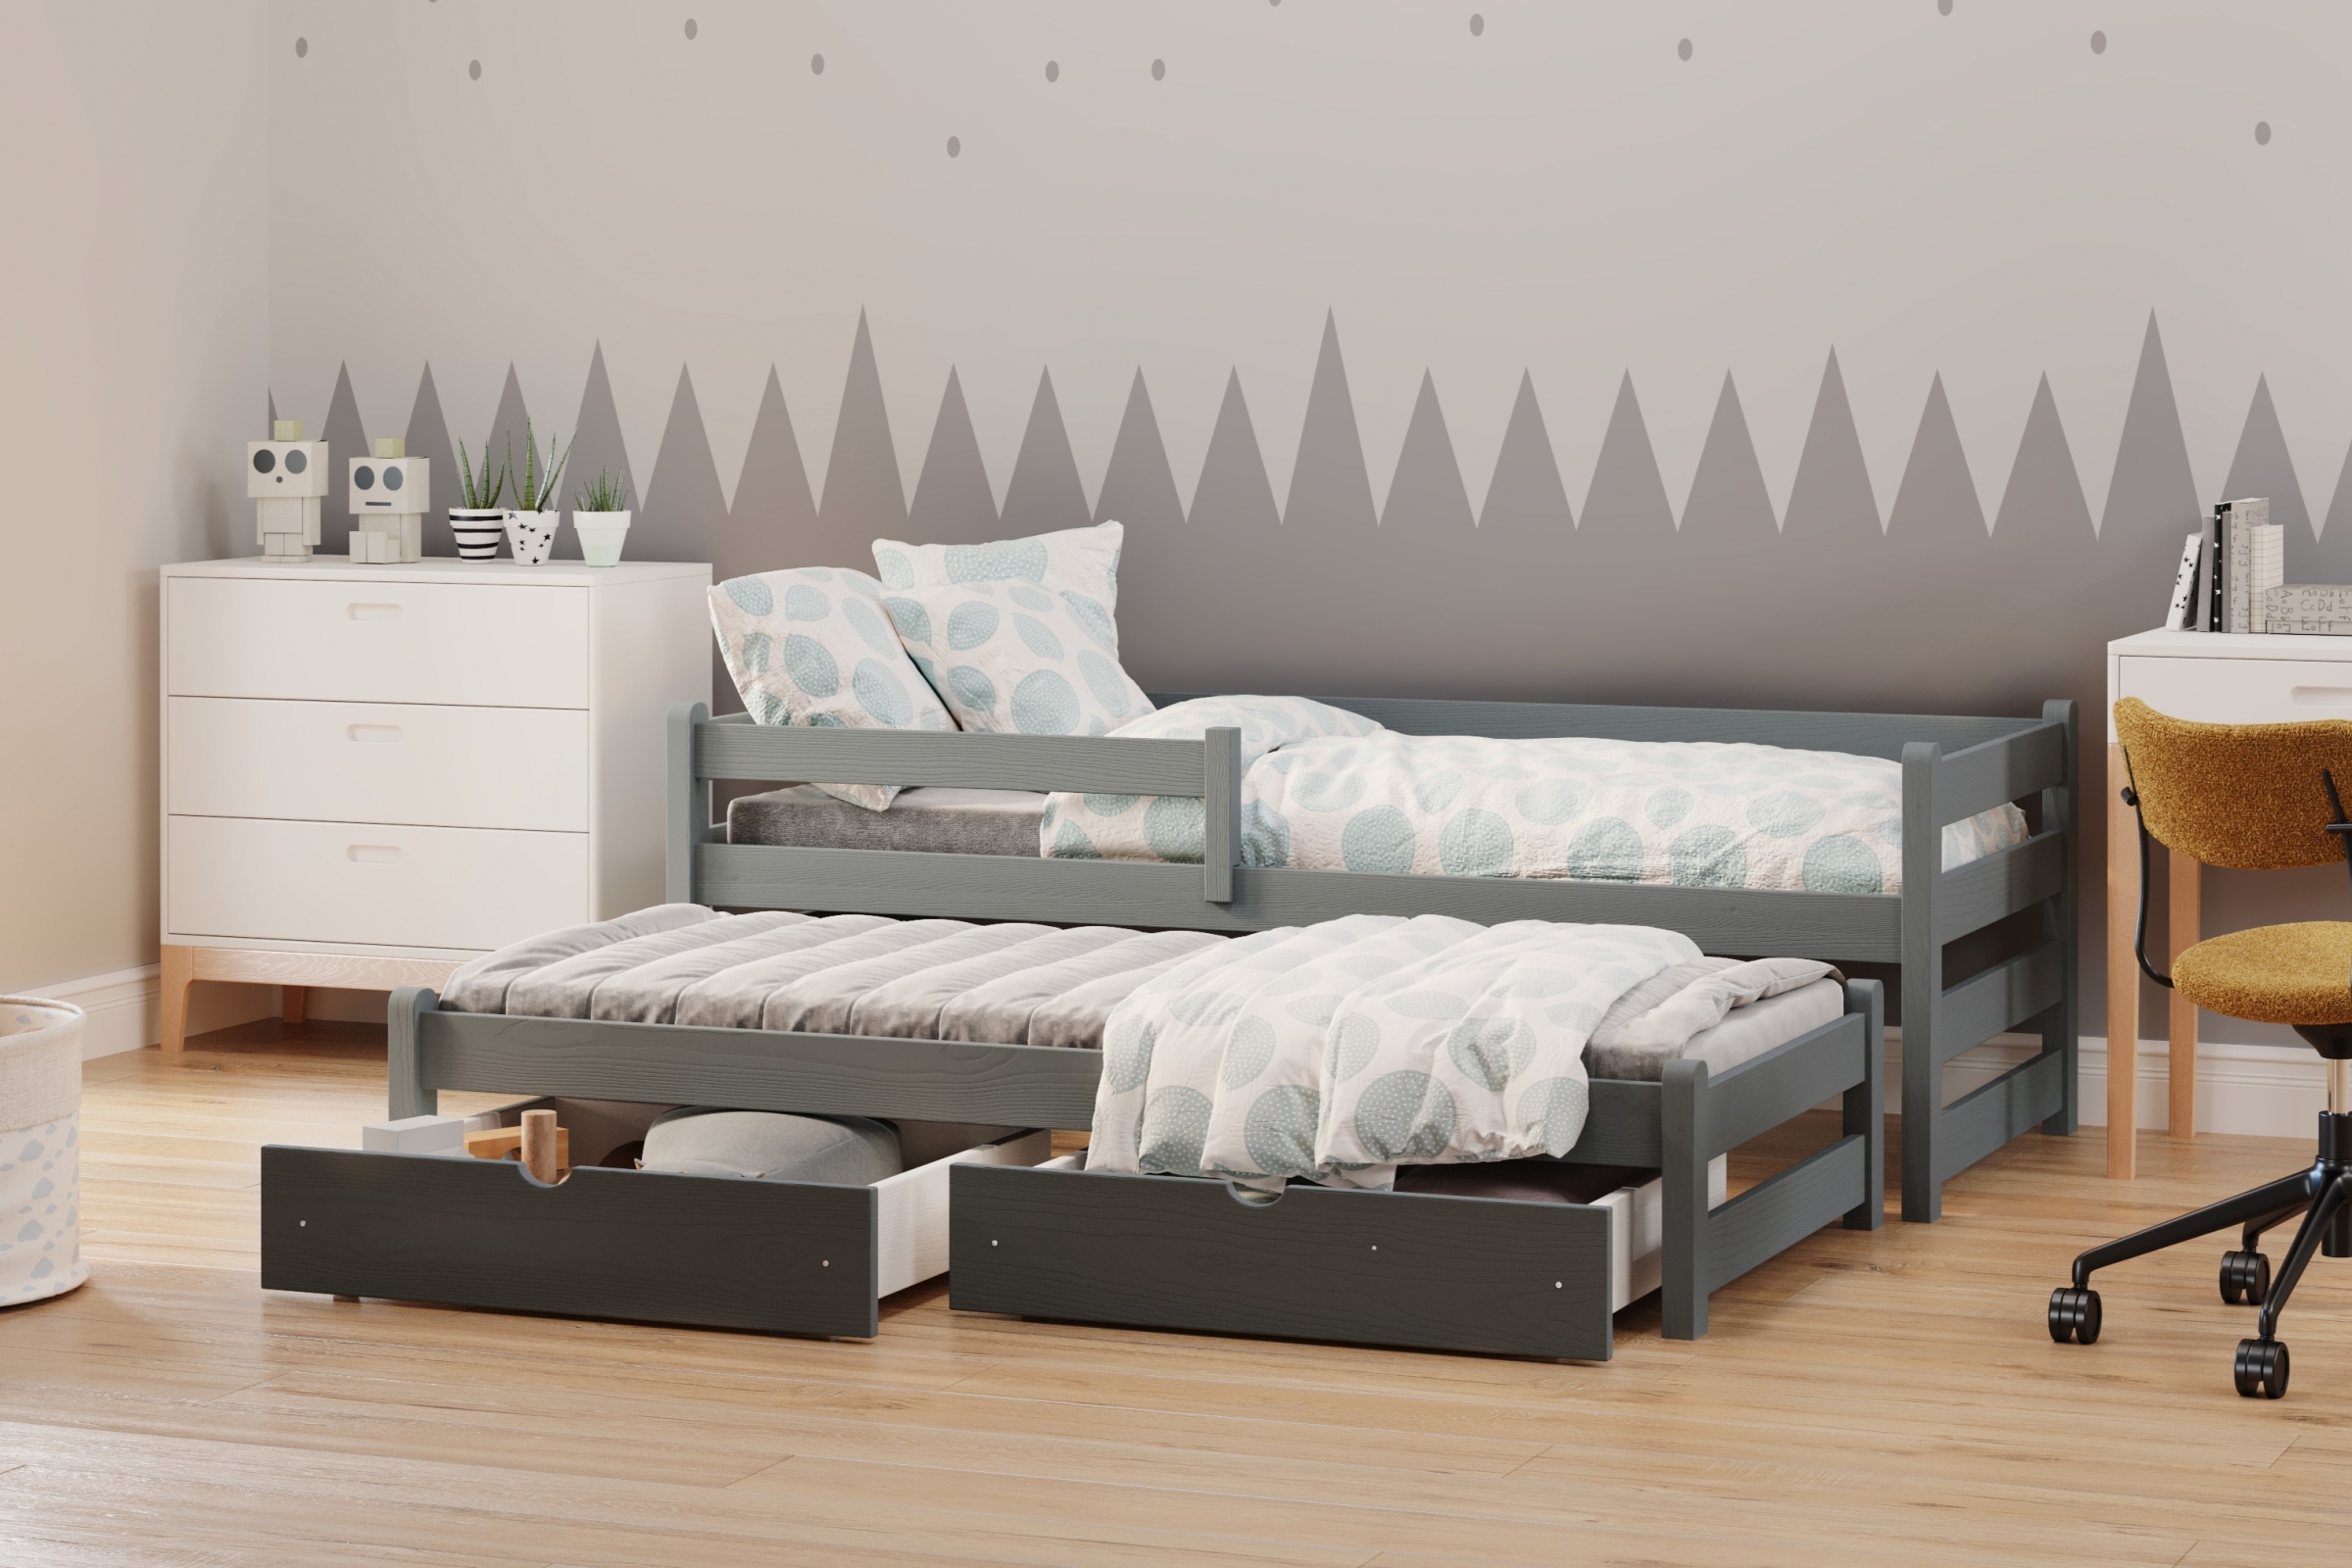 postel dětské přízemní výsuvná Alis DPV 001 - grafit, 80x180 postel přízemní výsuvná Alis - Barva Grafit - aranzacja